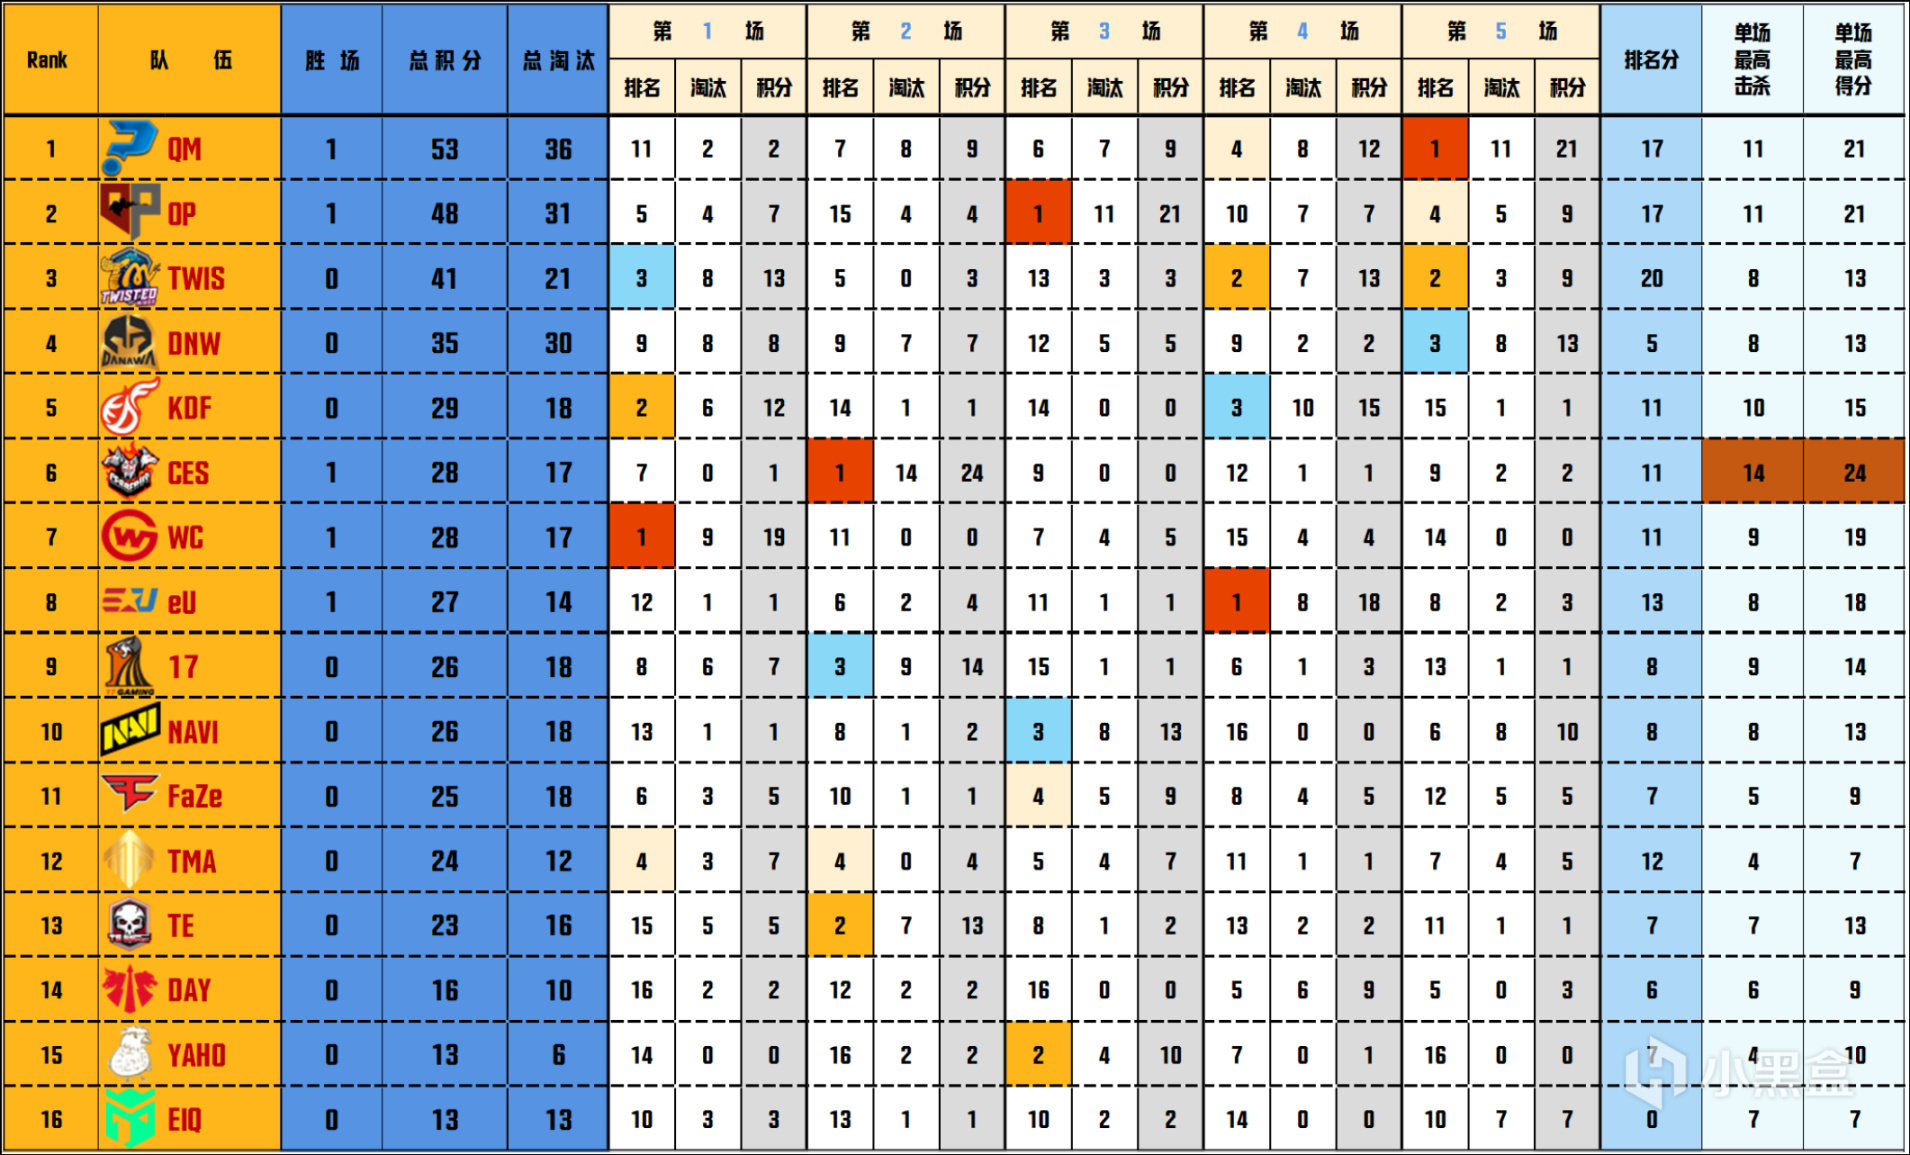 【数据流】PGC决赛D3/4,TWIS 140分来到榜首,DNW_seoul战神31淘汰-第2张